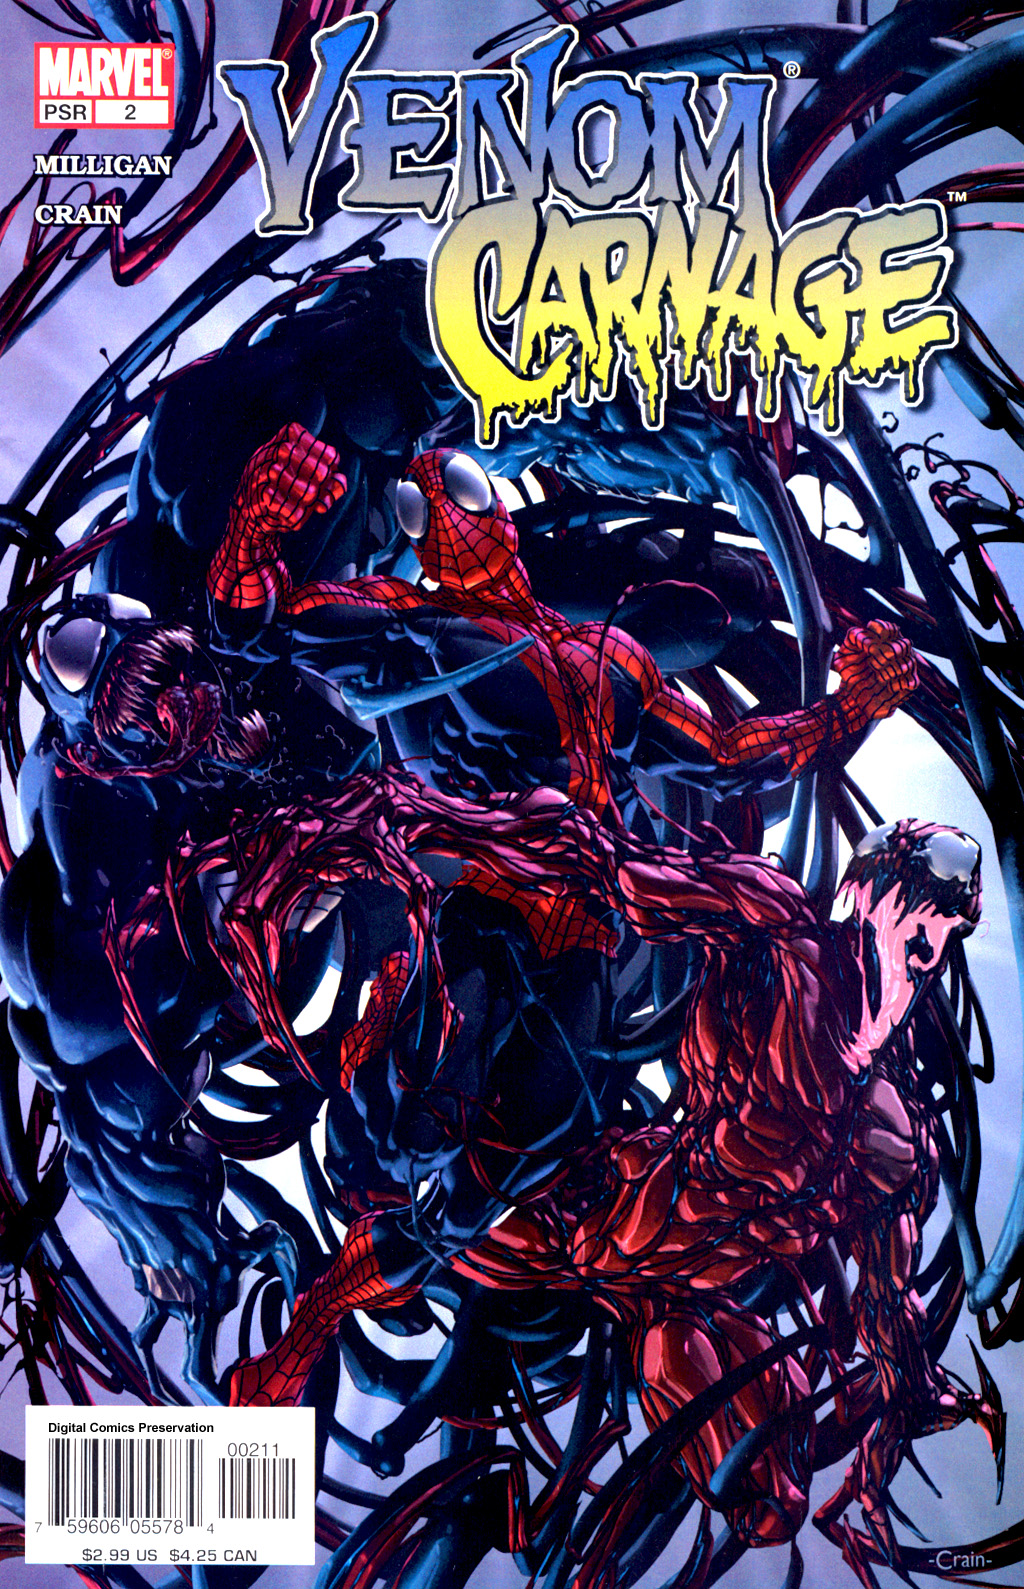 Venom Vs Carnage Backgrounds on Wallpapers Vista